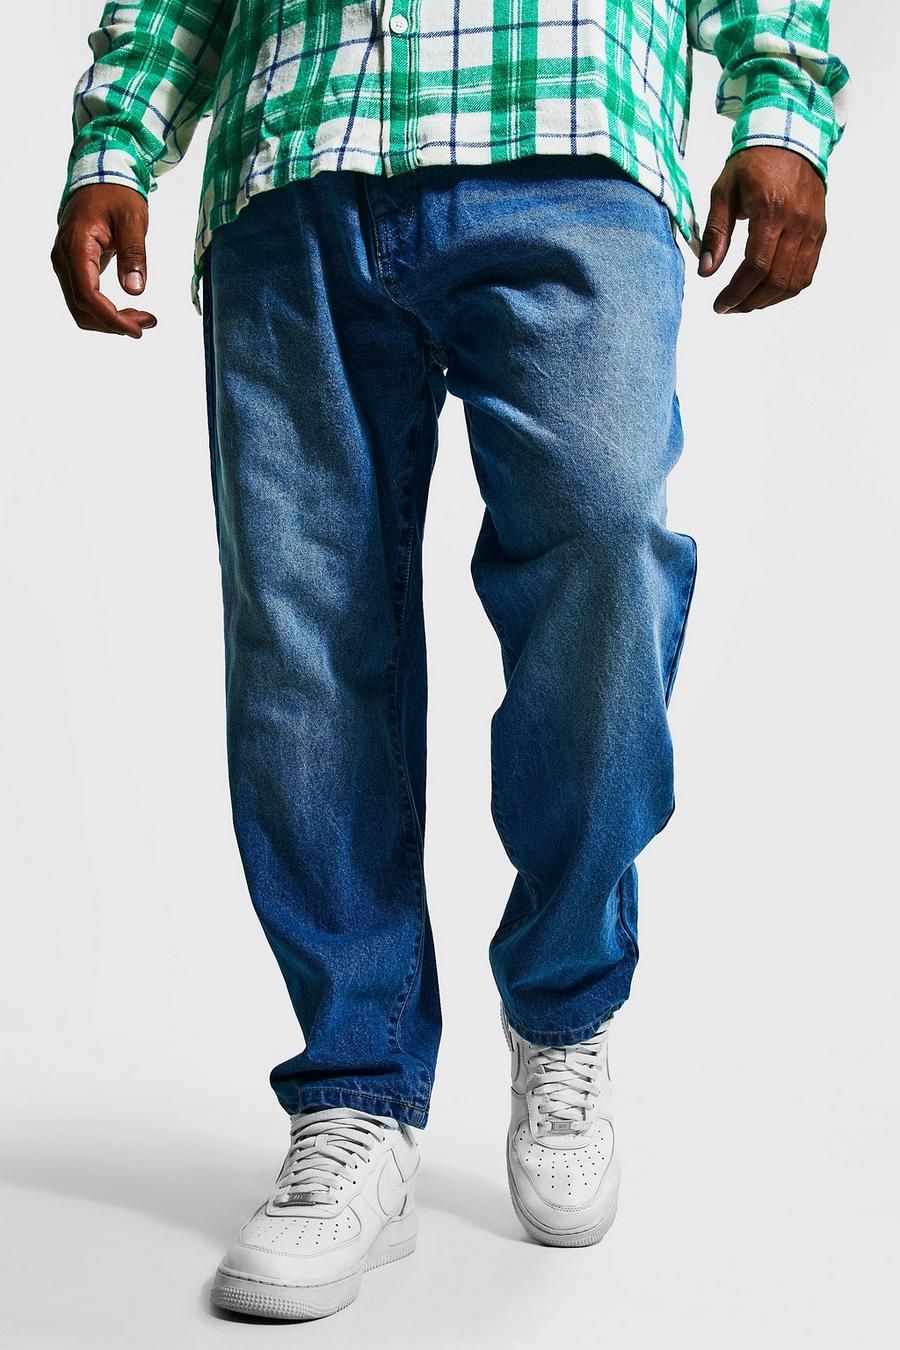 כחול ביניים azul ג'ינס בגזרה צרה בשילוב כותנה ממוחזרת, מידות גדולות